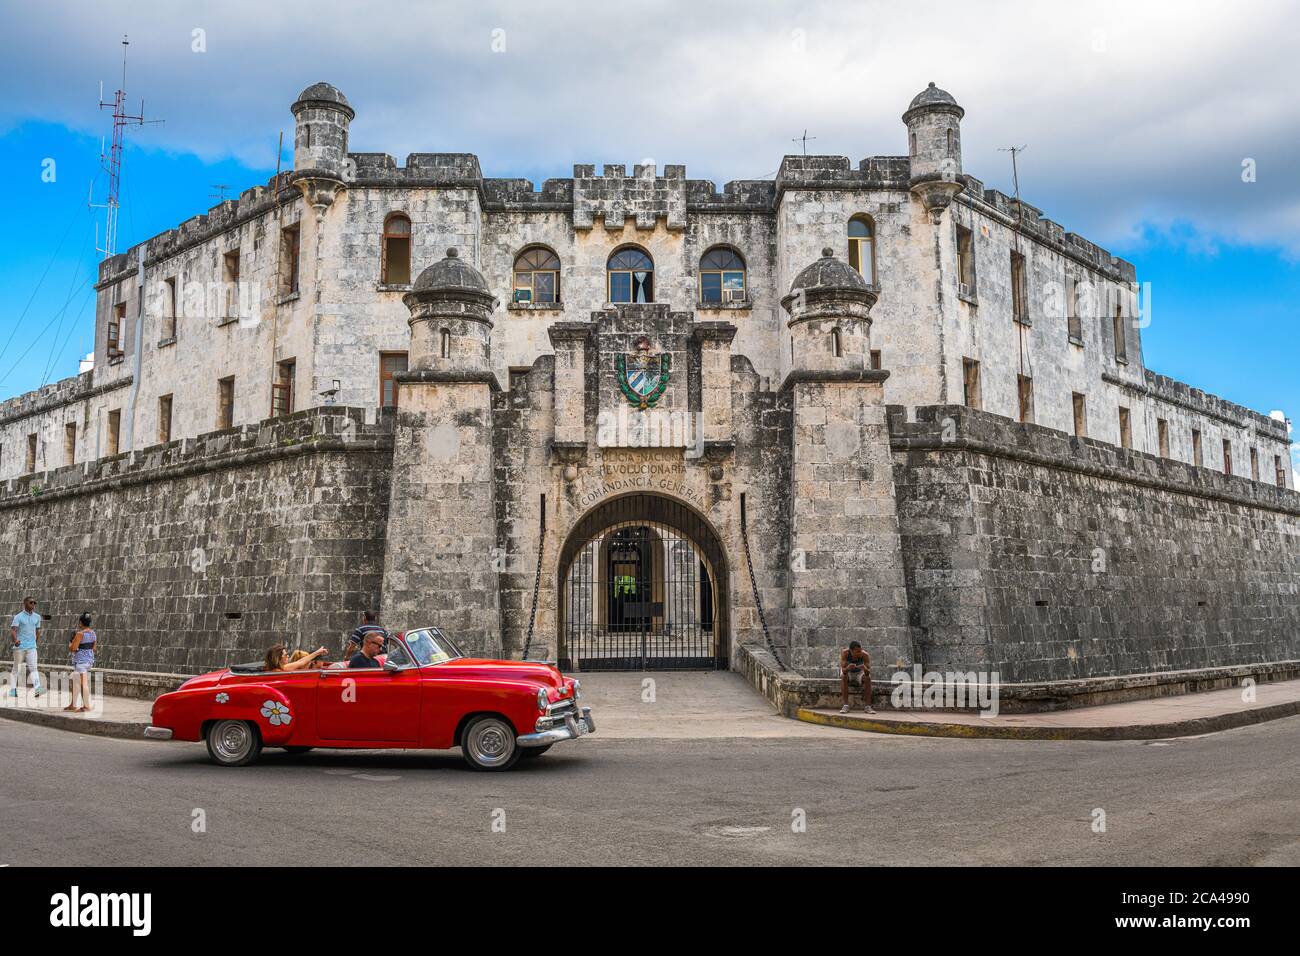 HAVANNA, KUBA - 26. DEZEMBER 2017: Touristen genießen eine Fahrt um Castillo de la Real Fuerza in einem ikonischen Automobil. Stockfoto